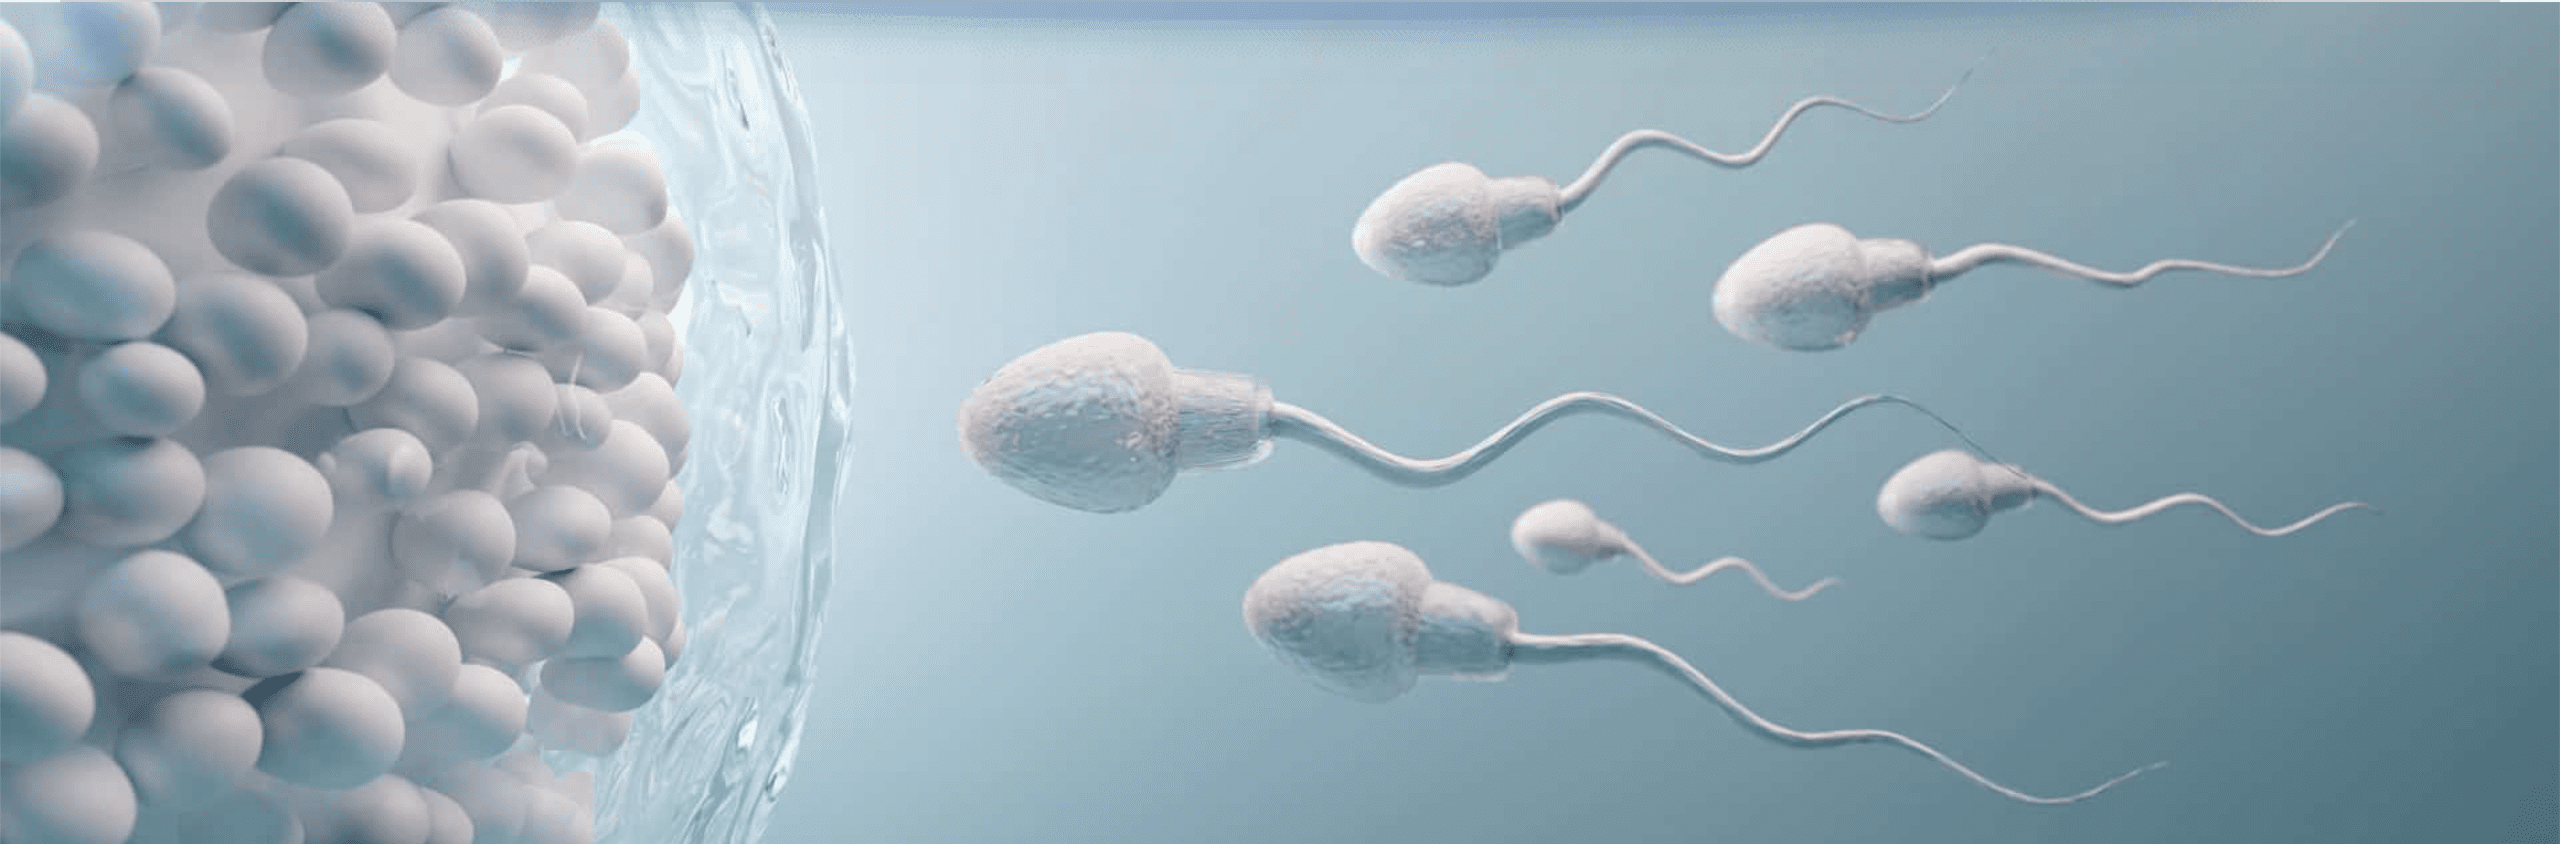 Diferencia entre Fertilidad e Infertilidad